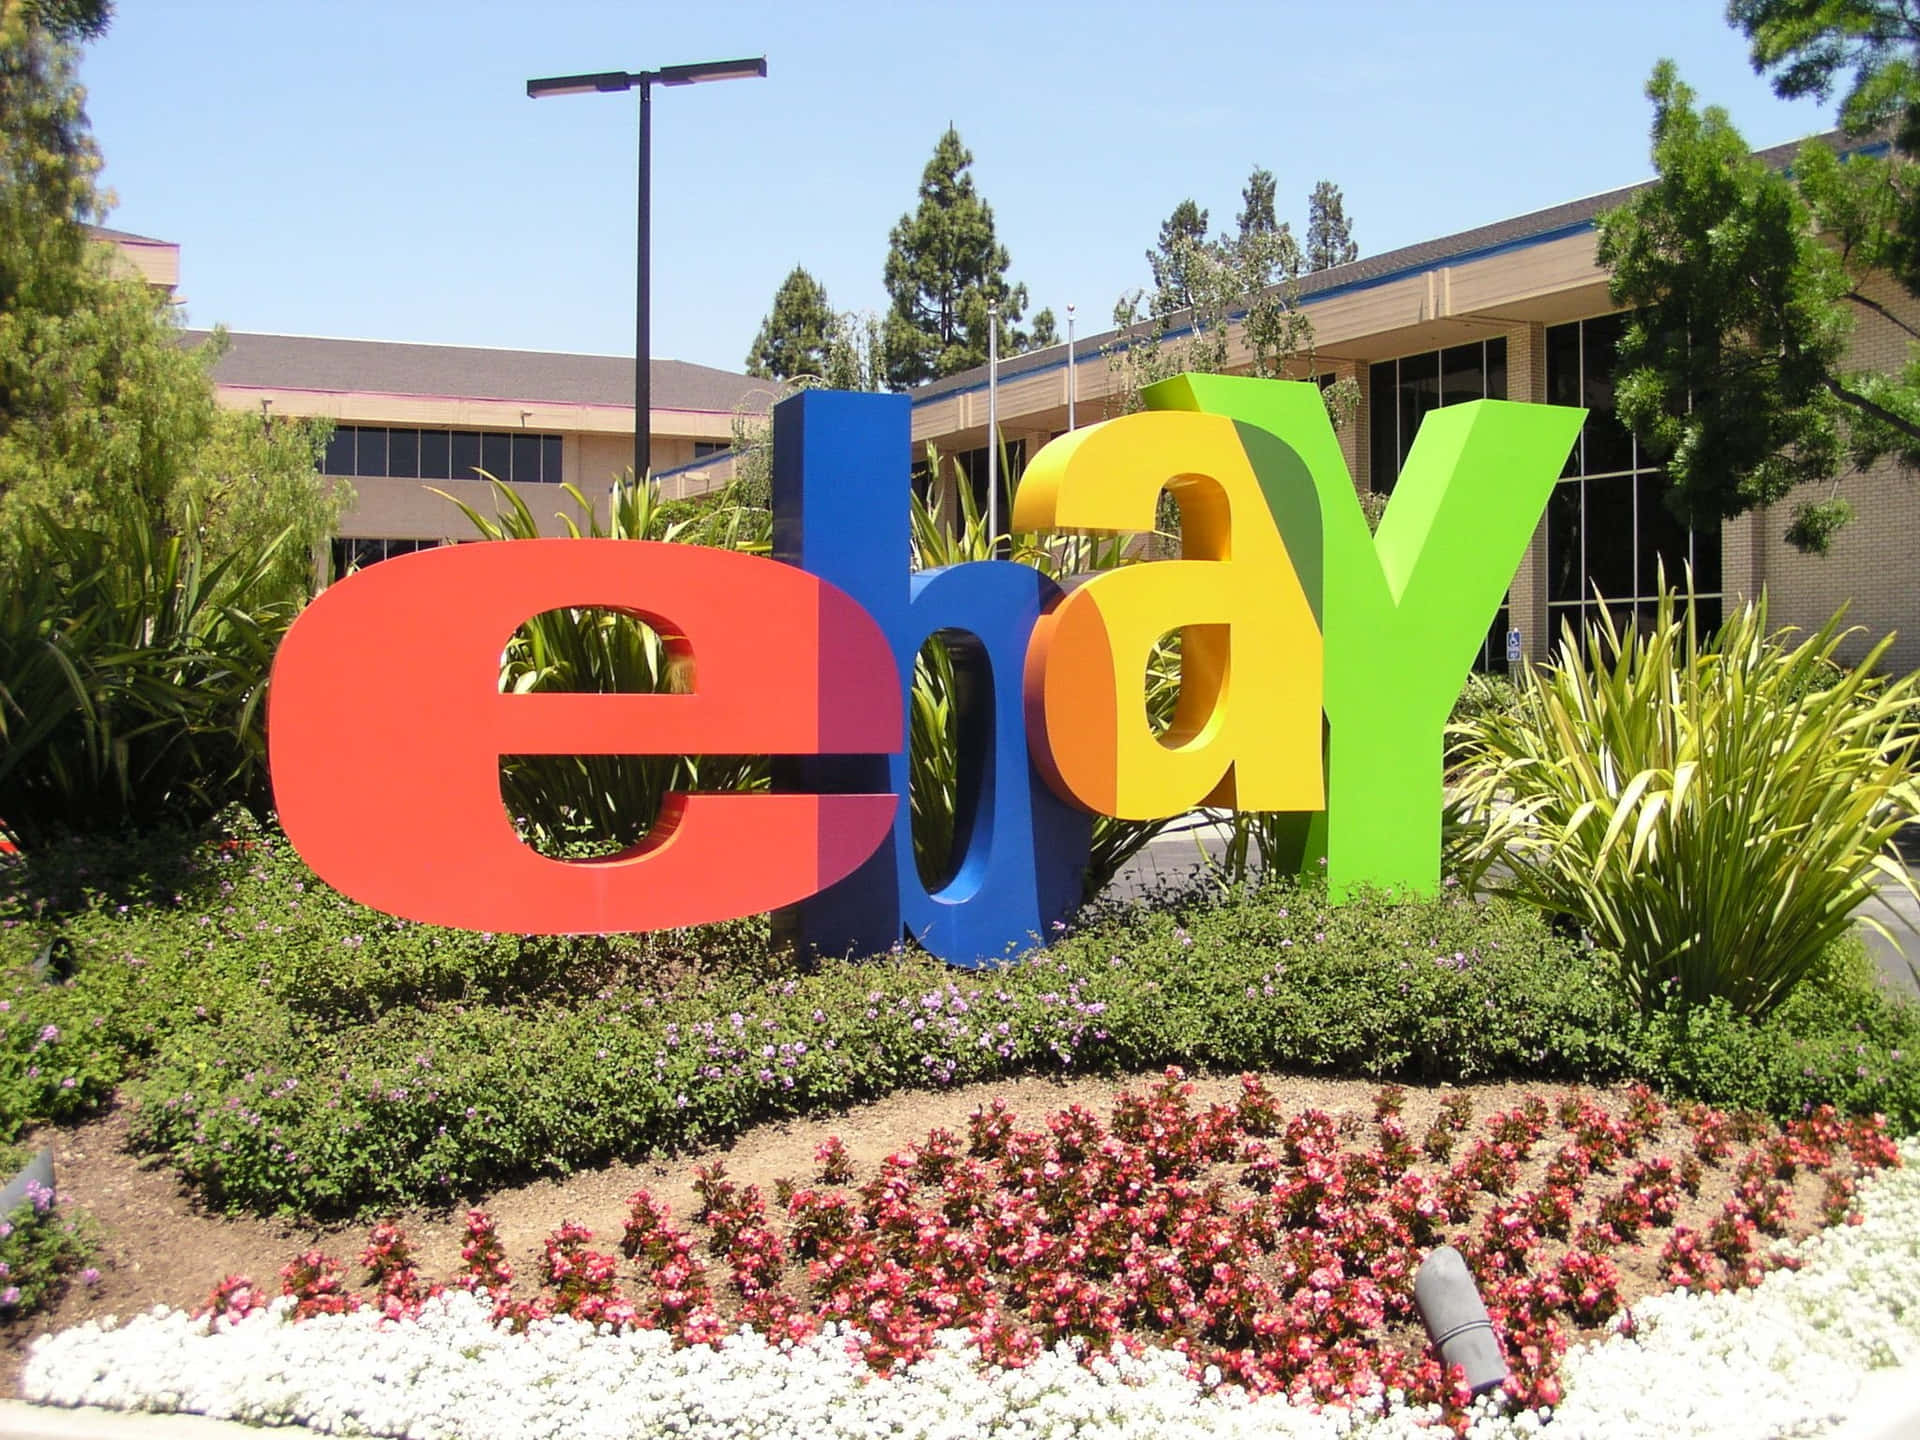 Kaufenund Verkaufen Sie Auf Ebay, Dem Weltweit Größten Online-marktplatz!